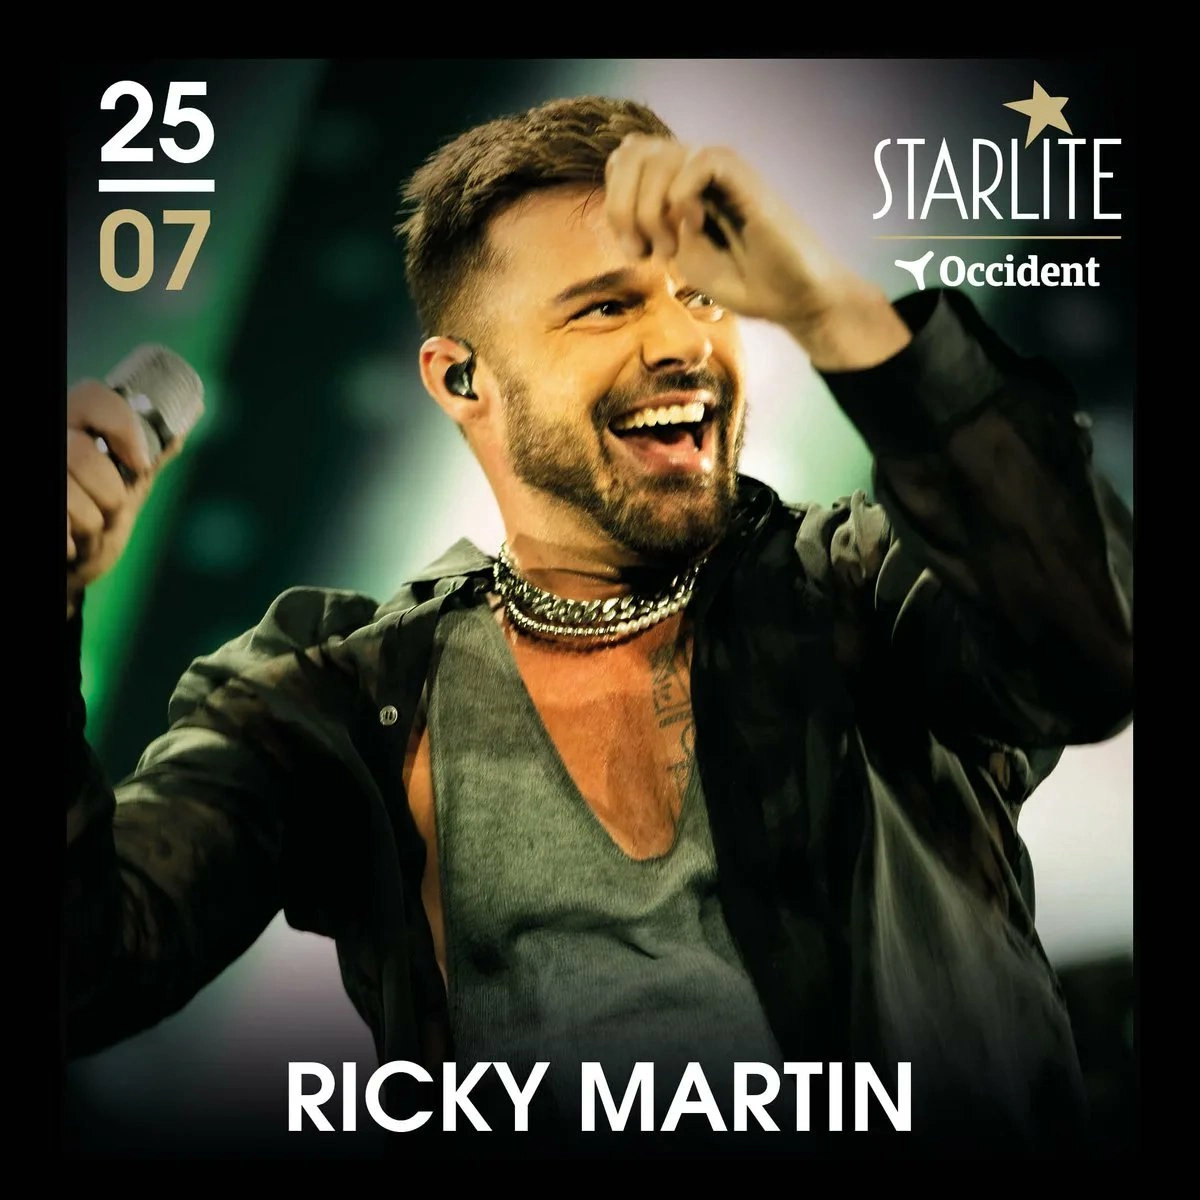 Ricky Martin at Starlite Marbella Tickets